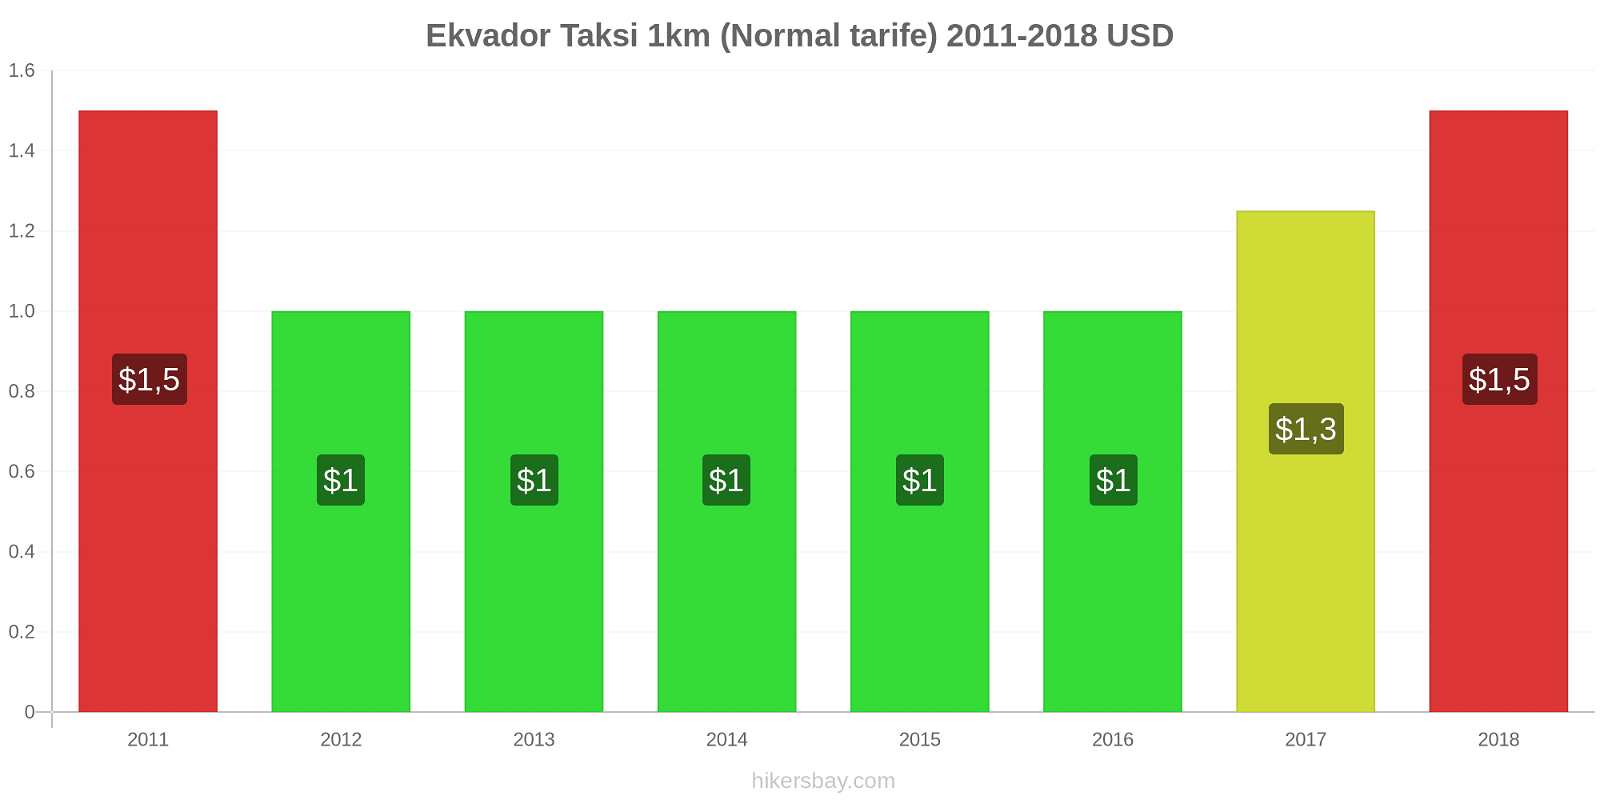 Ekvador fiyat değişiklikleri Taksi 1km (Normal tarife) hikersbay.com